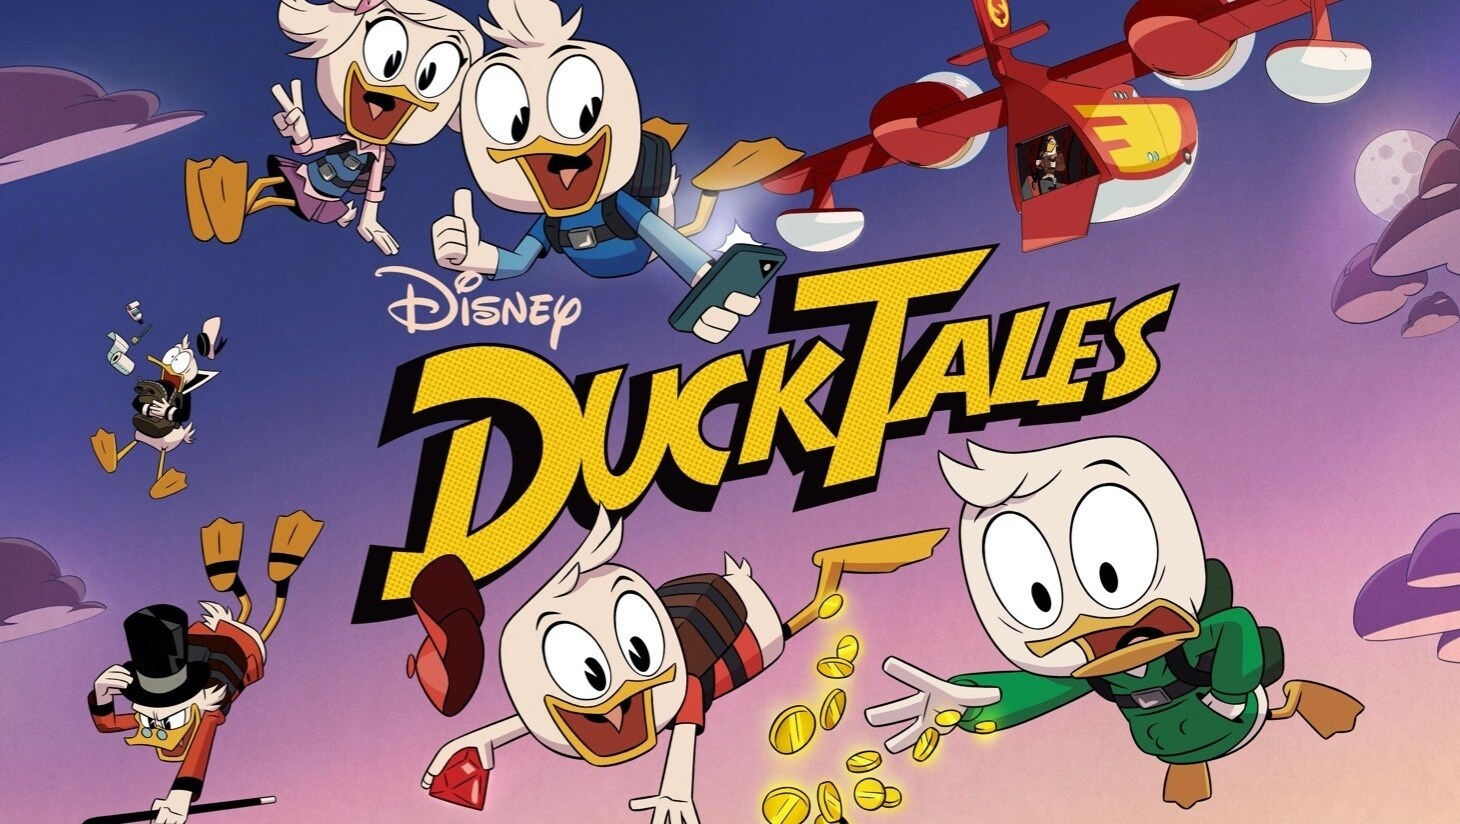 Tick, Trick, Track, Nicky, Dagobert, Donald und Quack mit seinem Flugzeug fallen von einem lila Himmel, „DuckTales“-Logo 